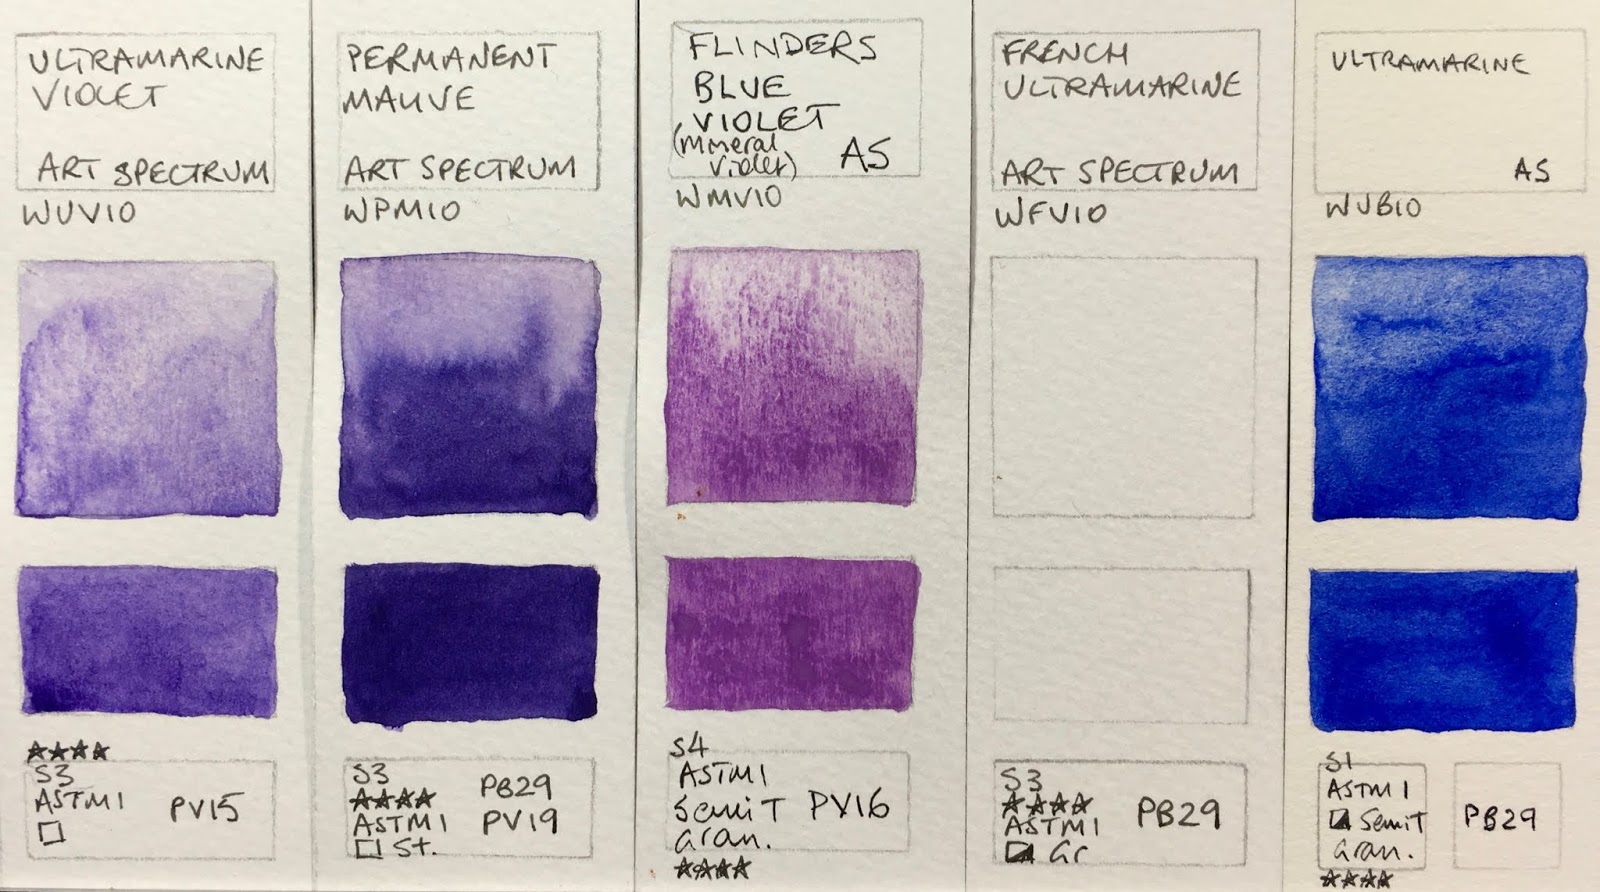 Art Spectrum Watercolour Chart